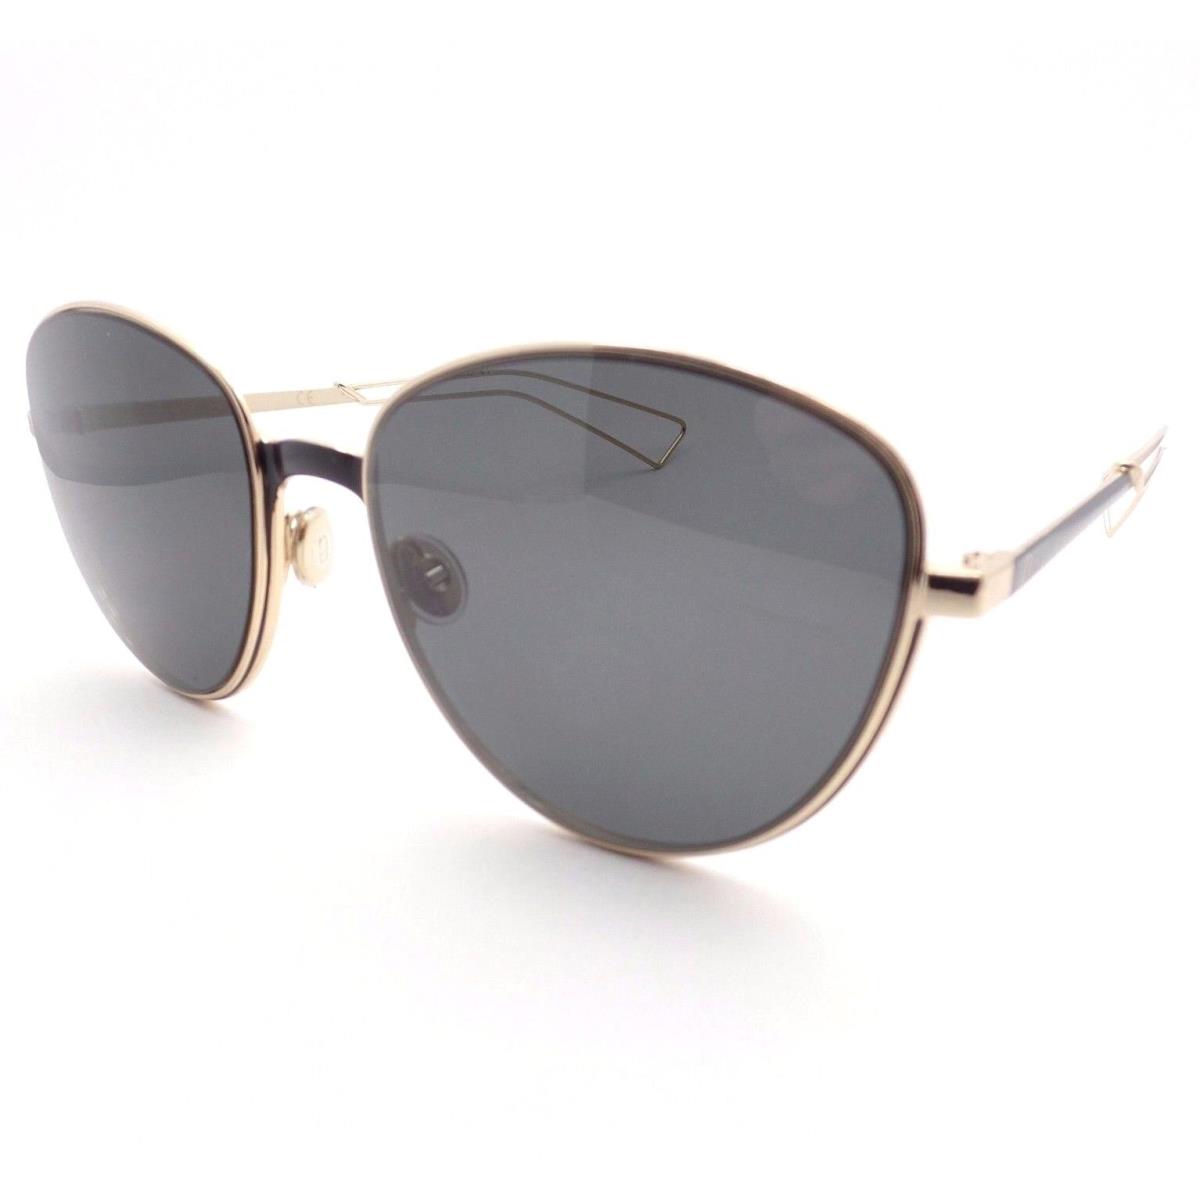 Christian Dior Ultra Rcw Y1 Matte Black Gold Grey Sunglasses - Frame: Black Matte Gold, Lens: Grey